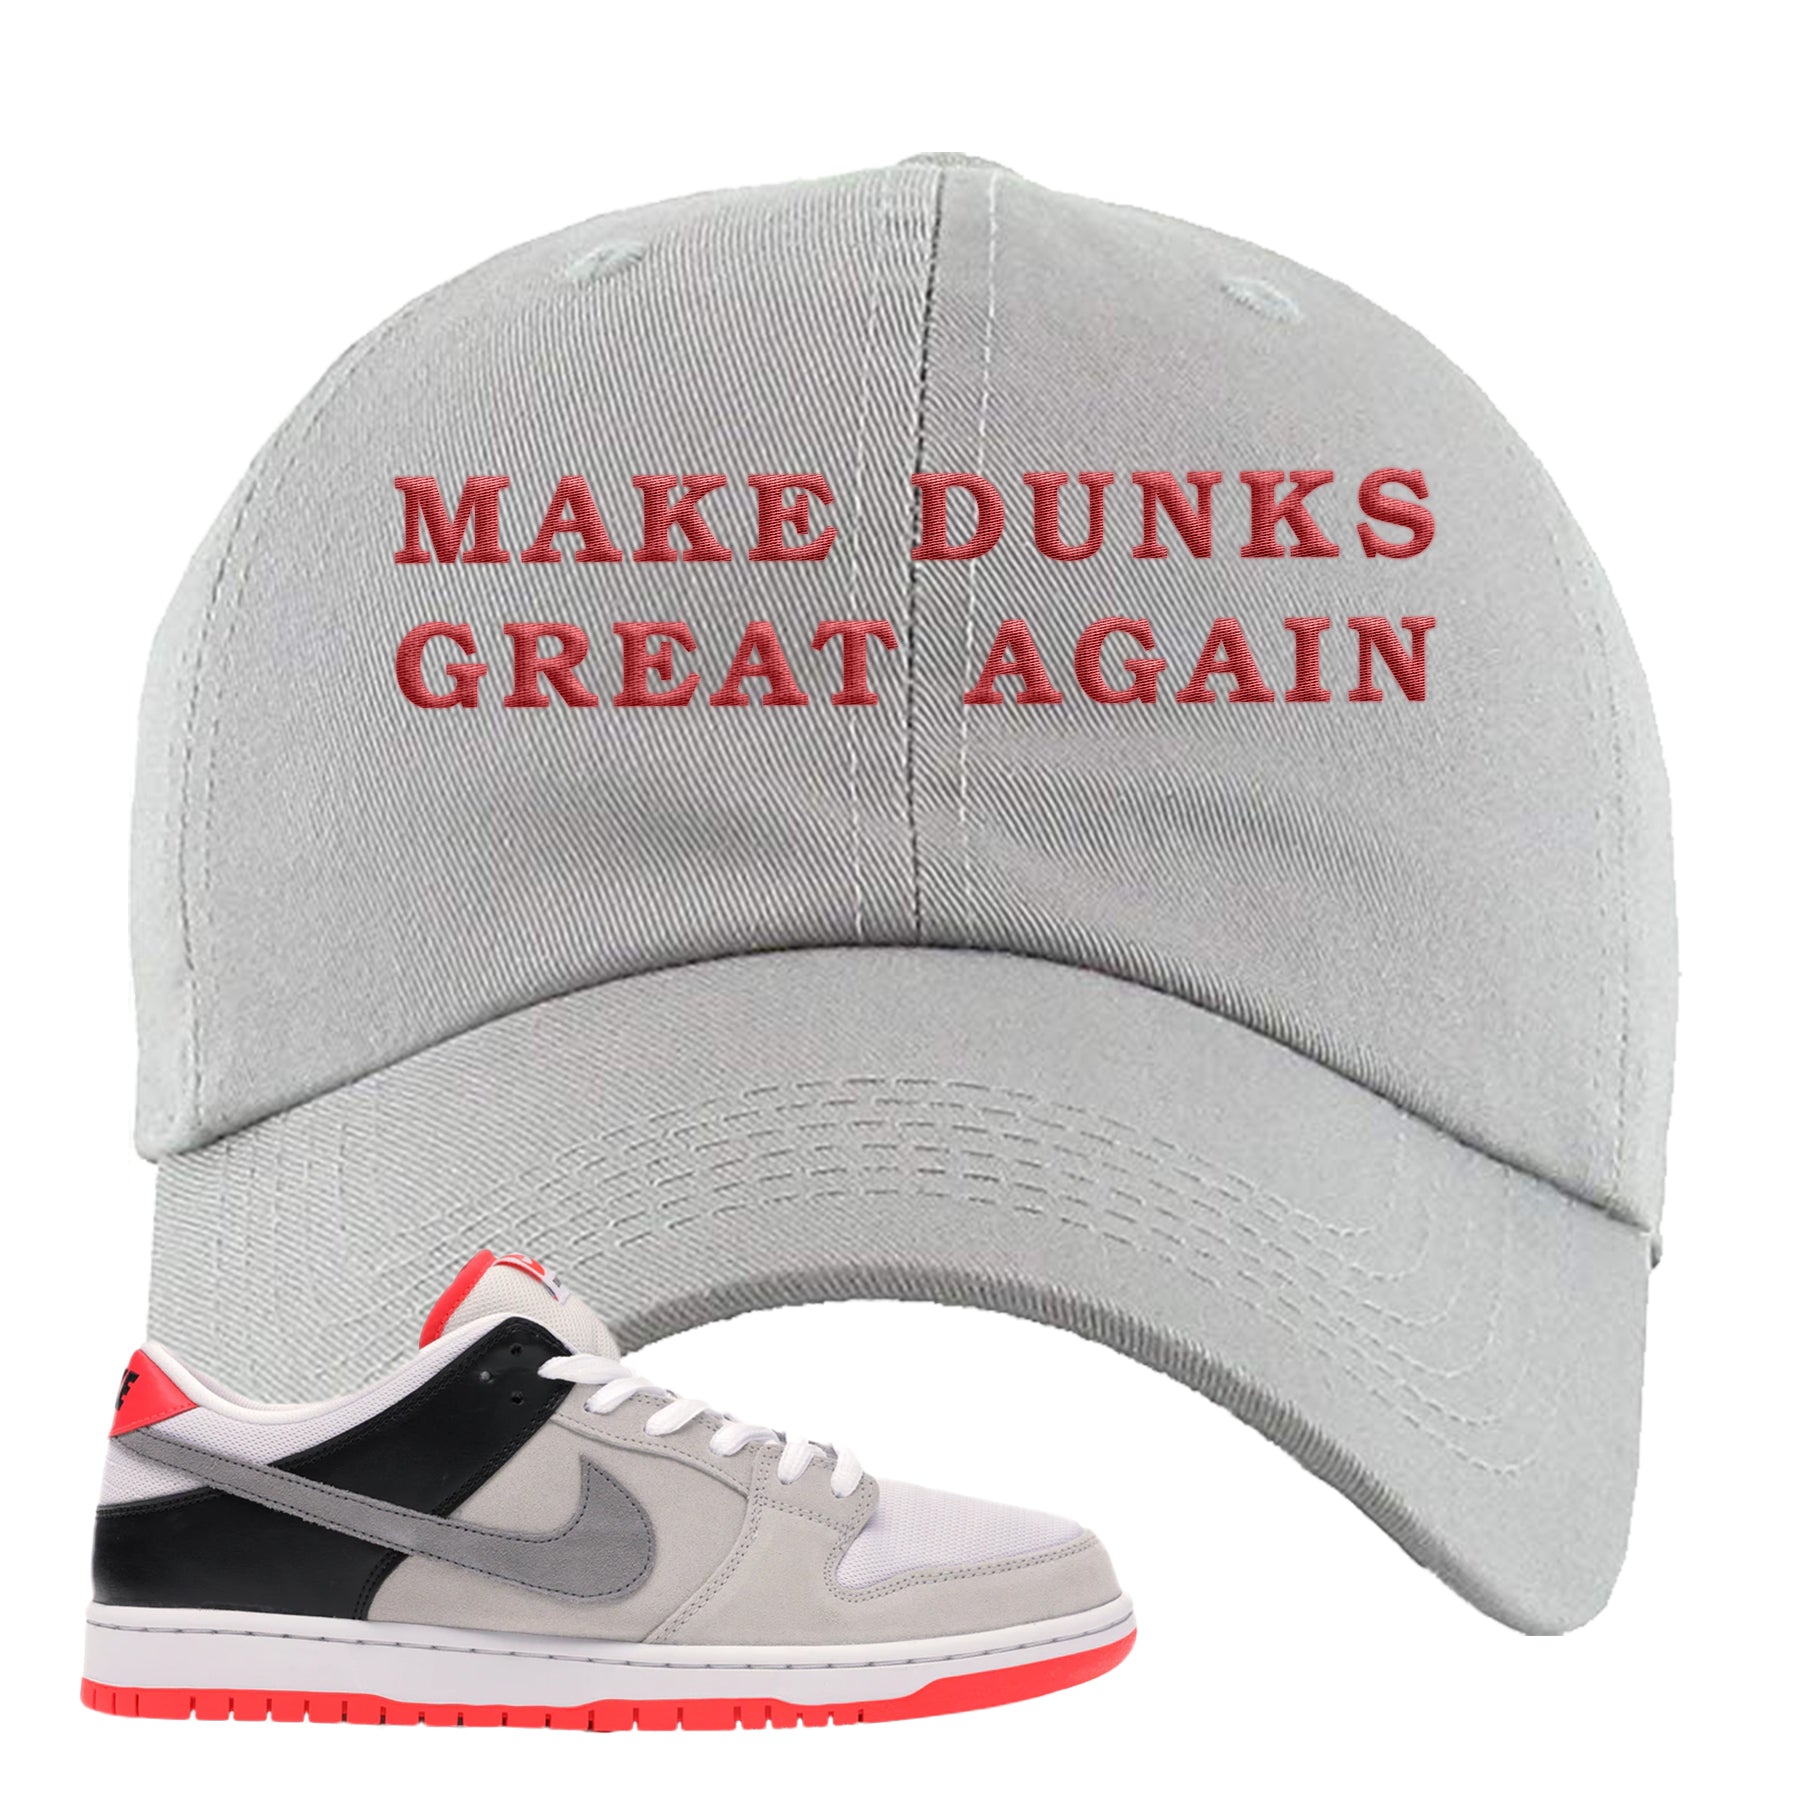 make sneakers great again